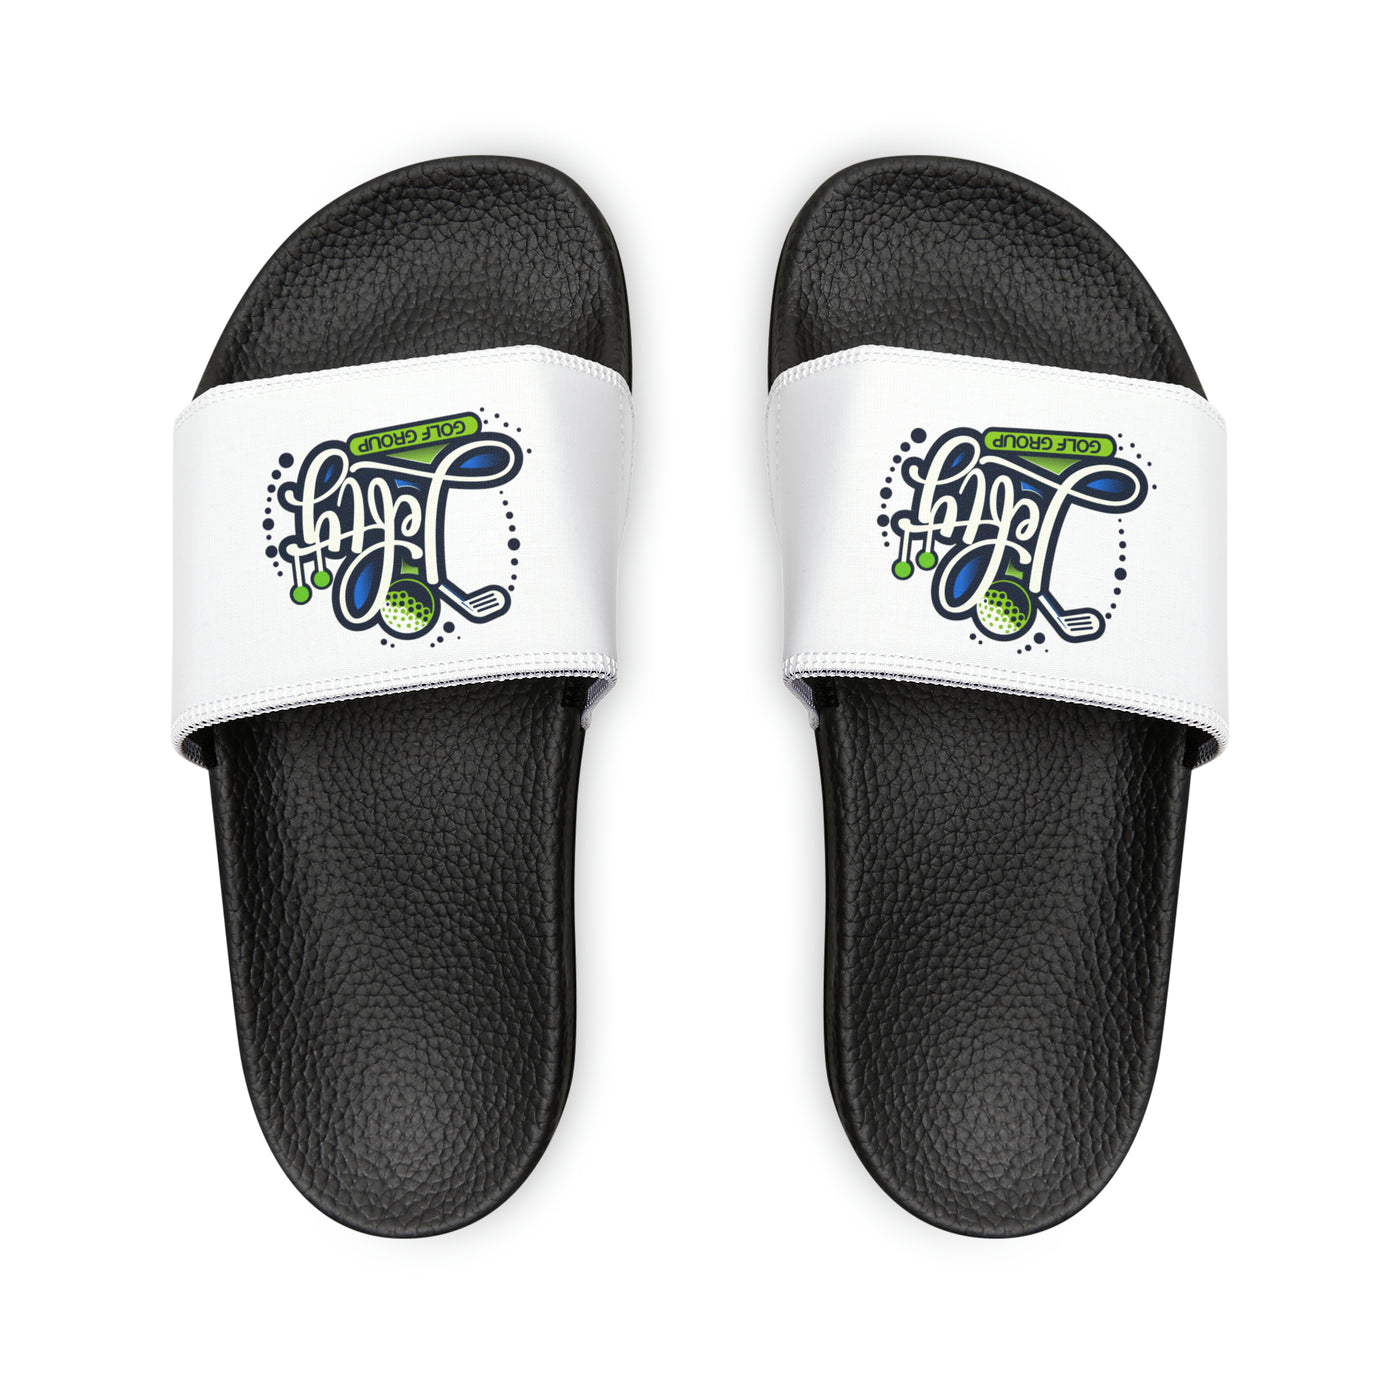 Lefty Golf Group Slide Sandals